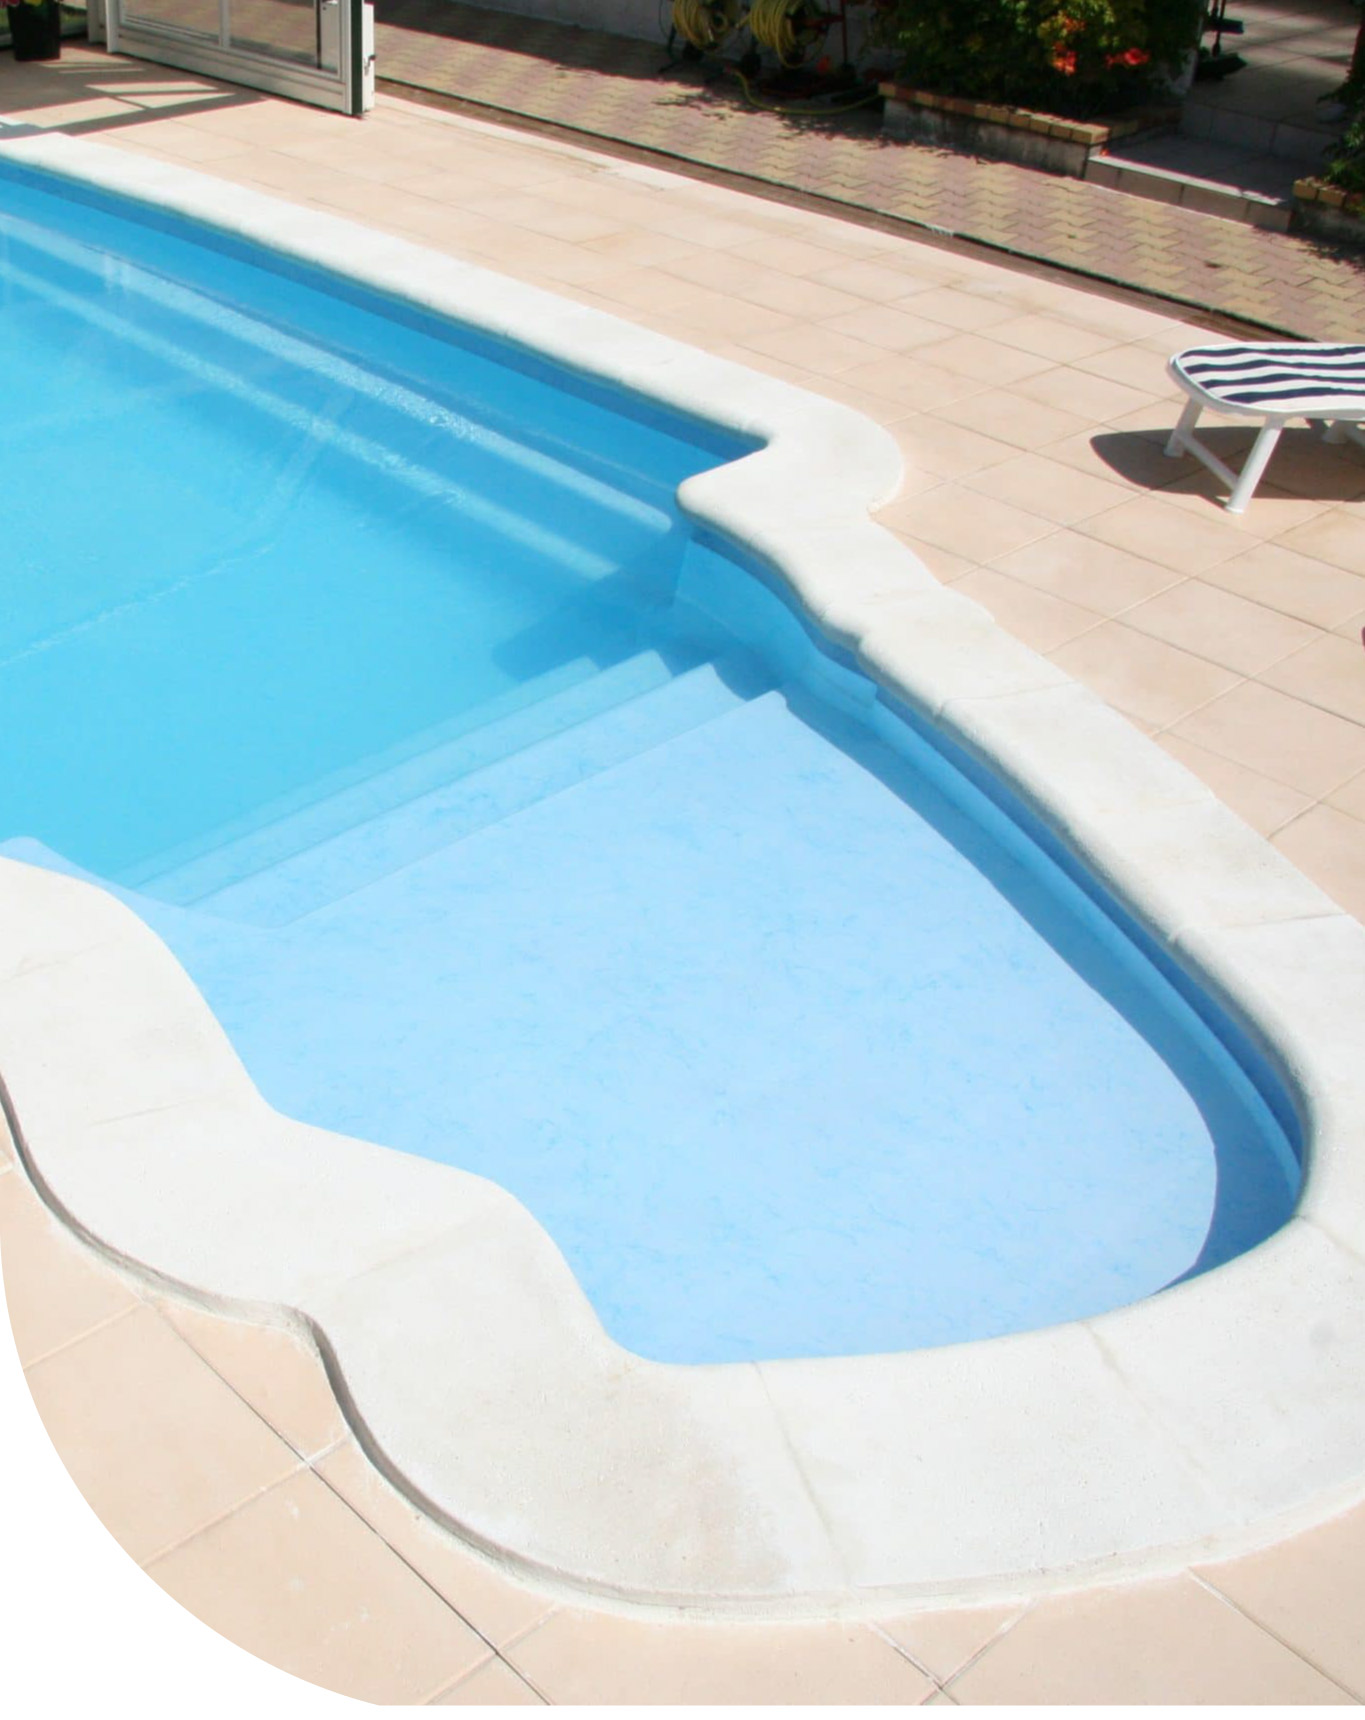 piscina de poliester en valencia